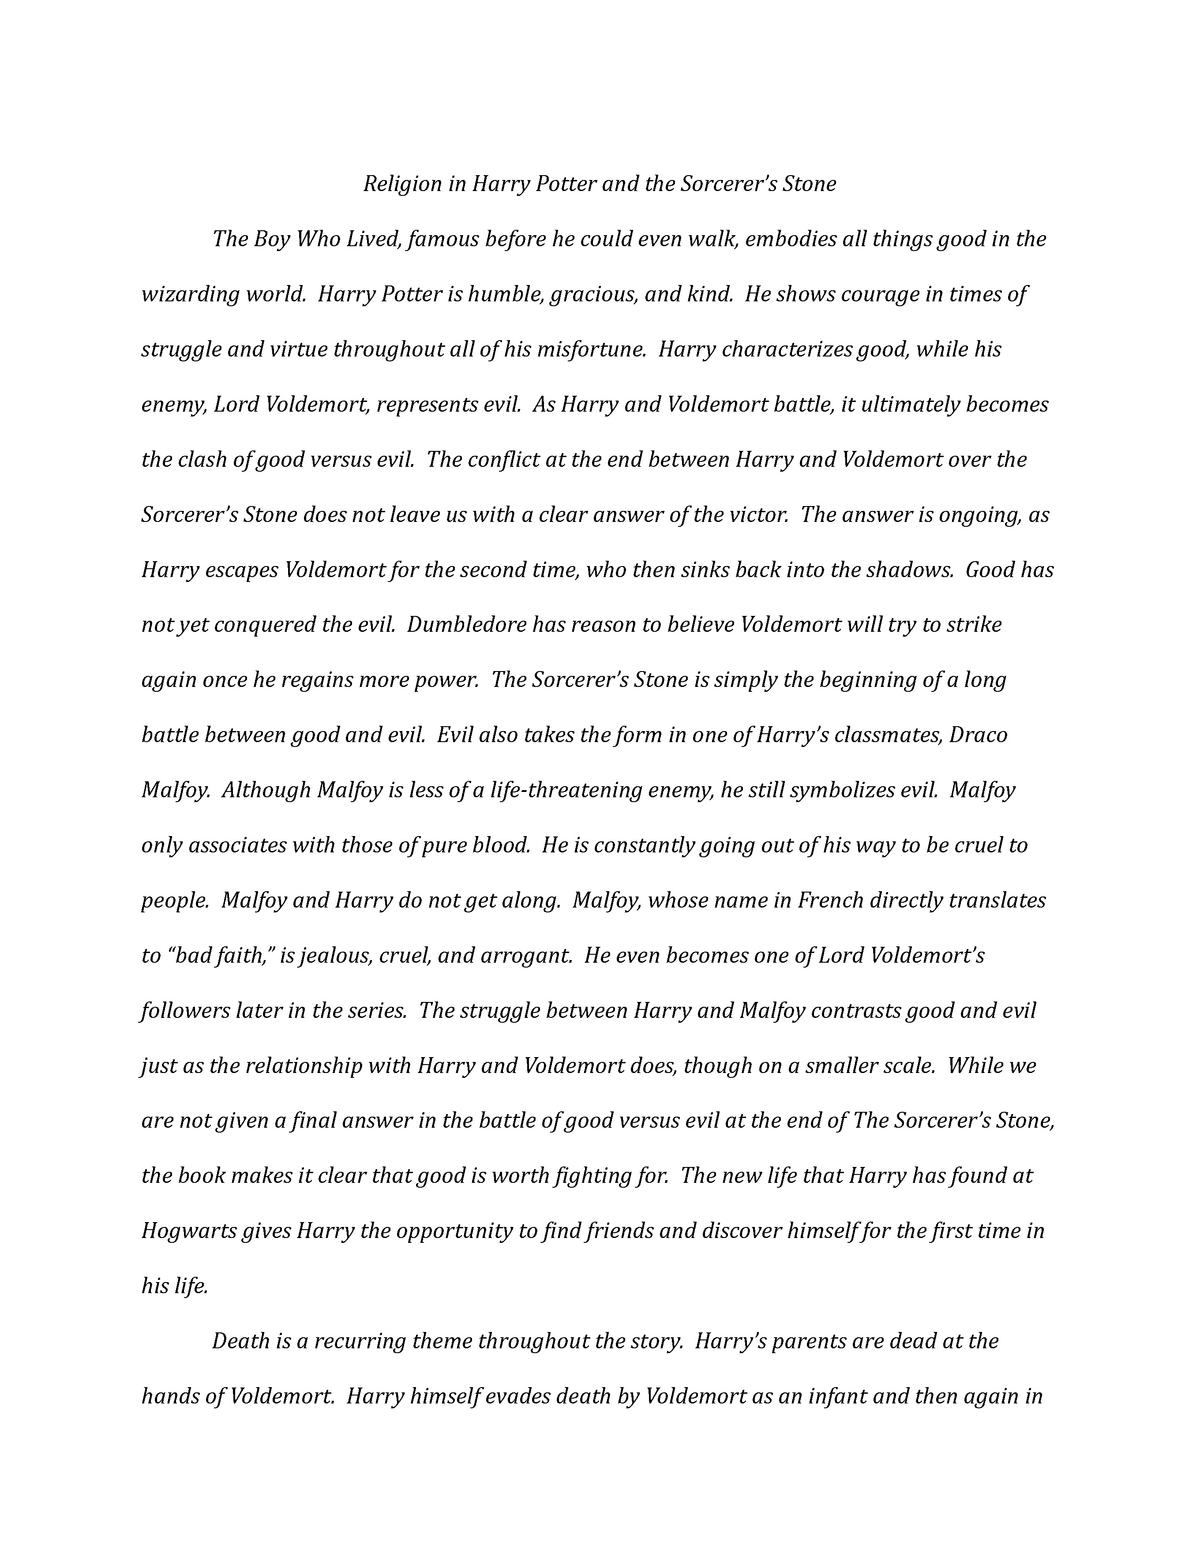 harry potter conclusion essay